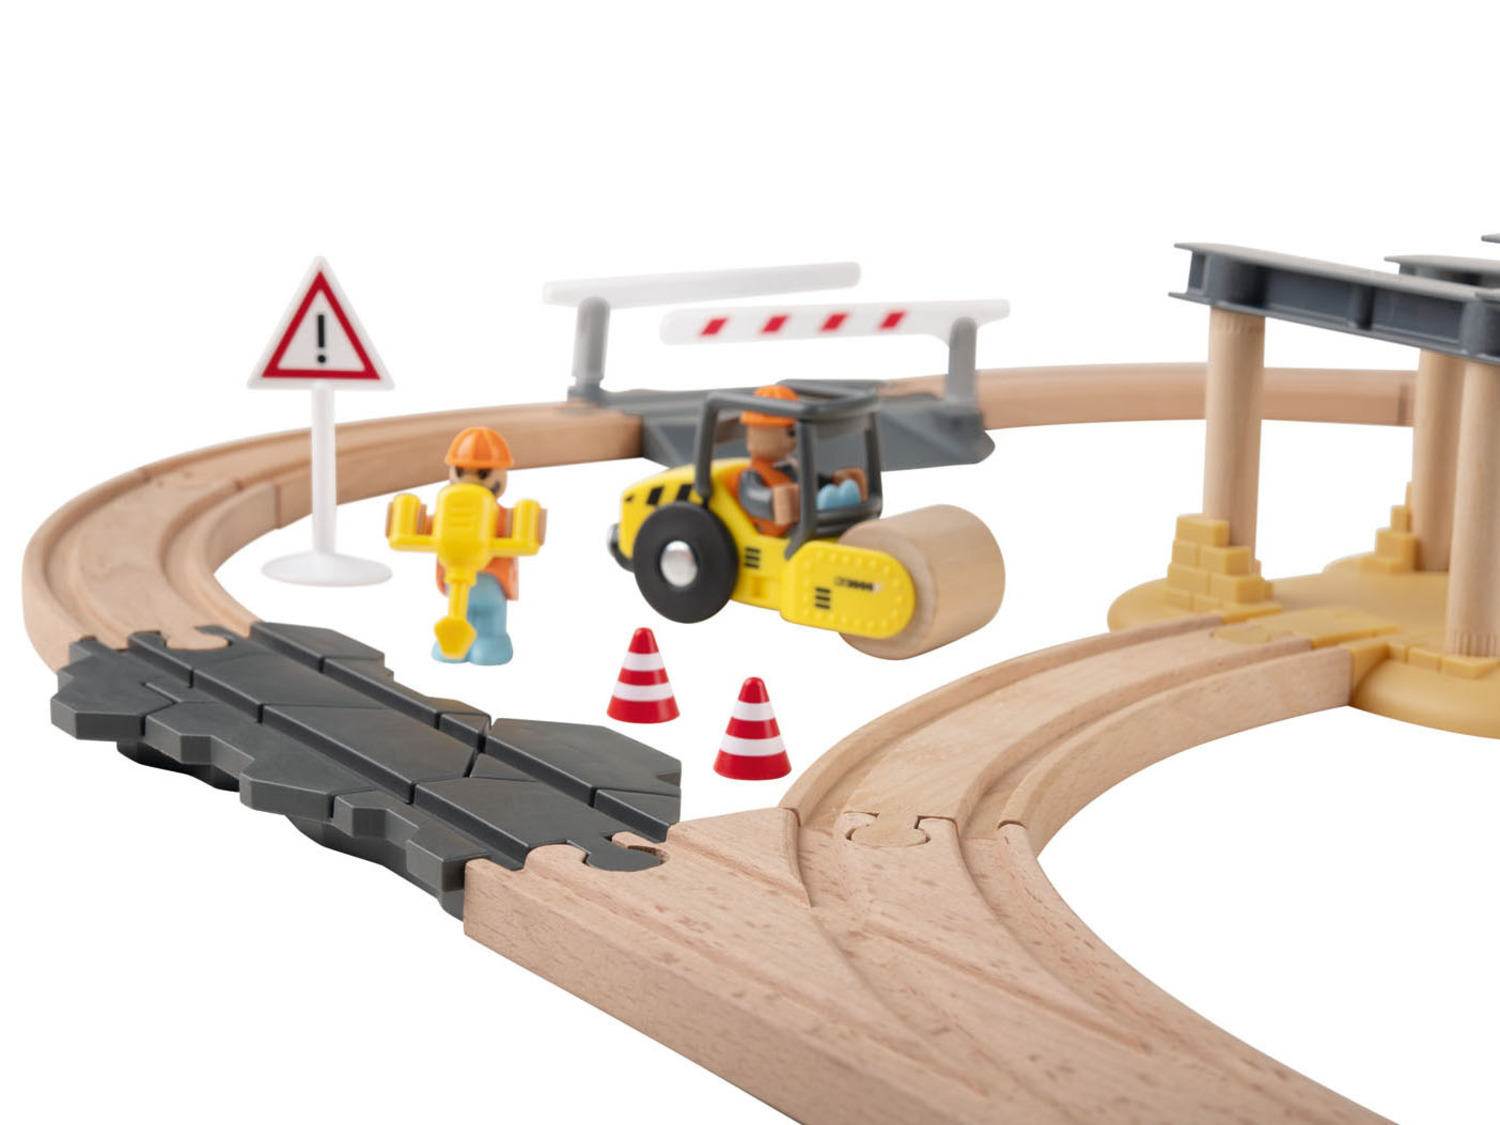 Holz-Eisenbahn-Set Baustelle, Playtive mit Buchenholz